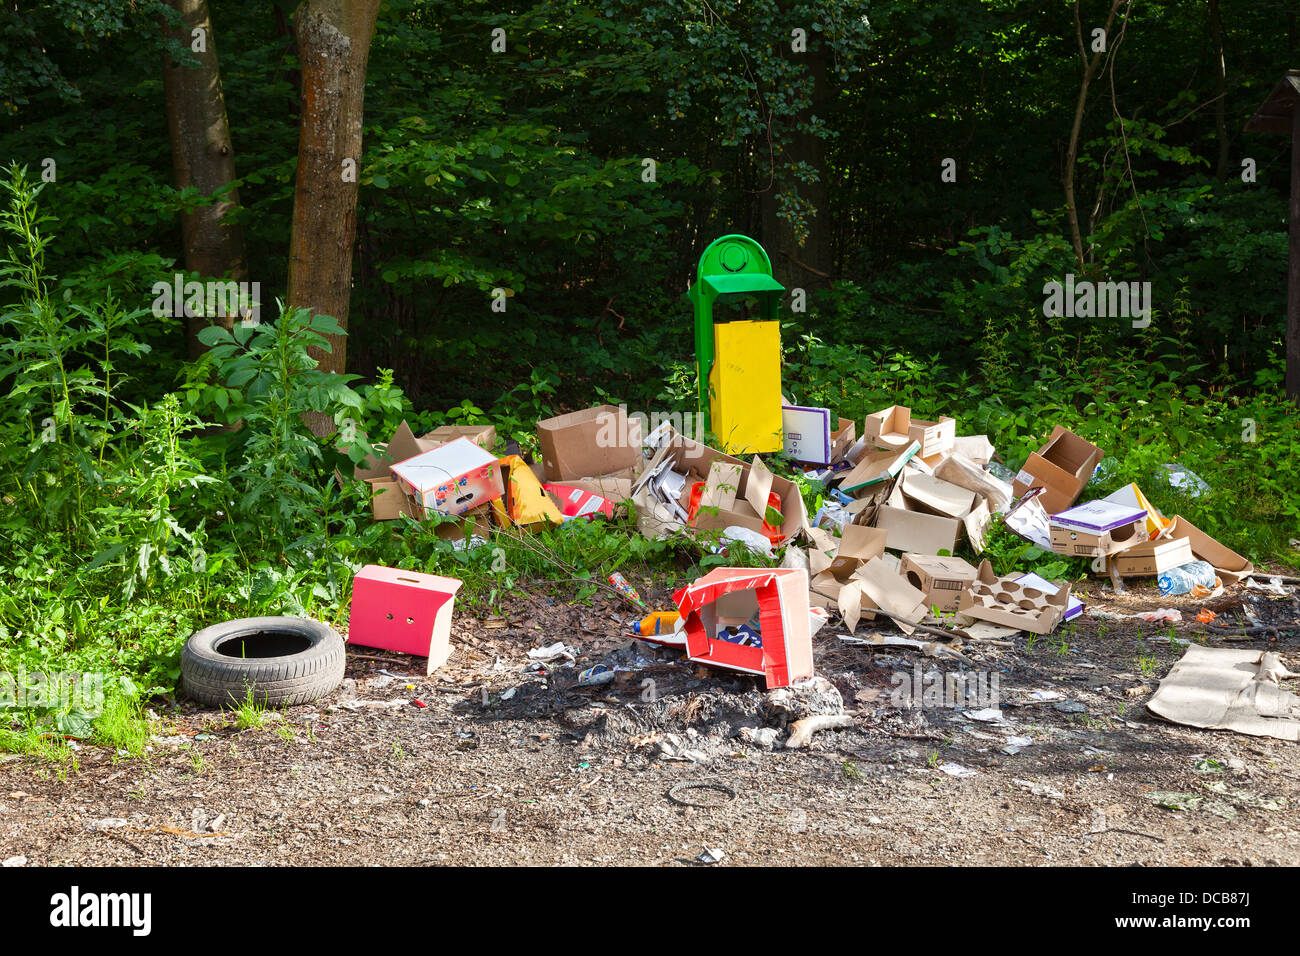 Müll in Deponien in der Nähe von Wald - Umweltverschmutzung. Stockfoto